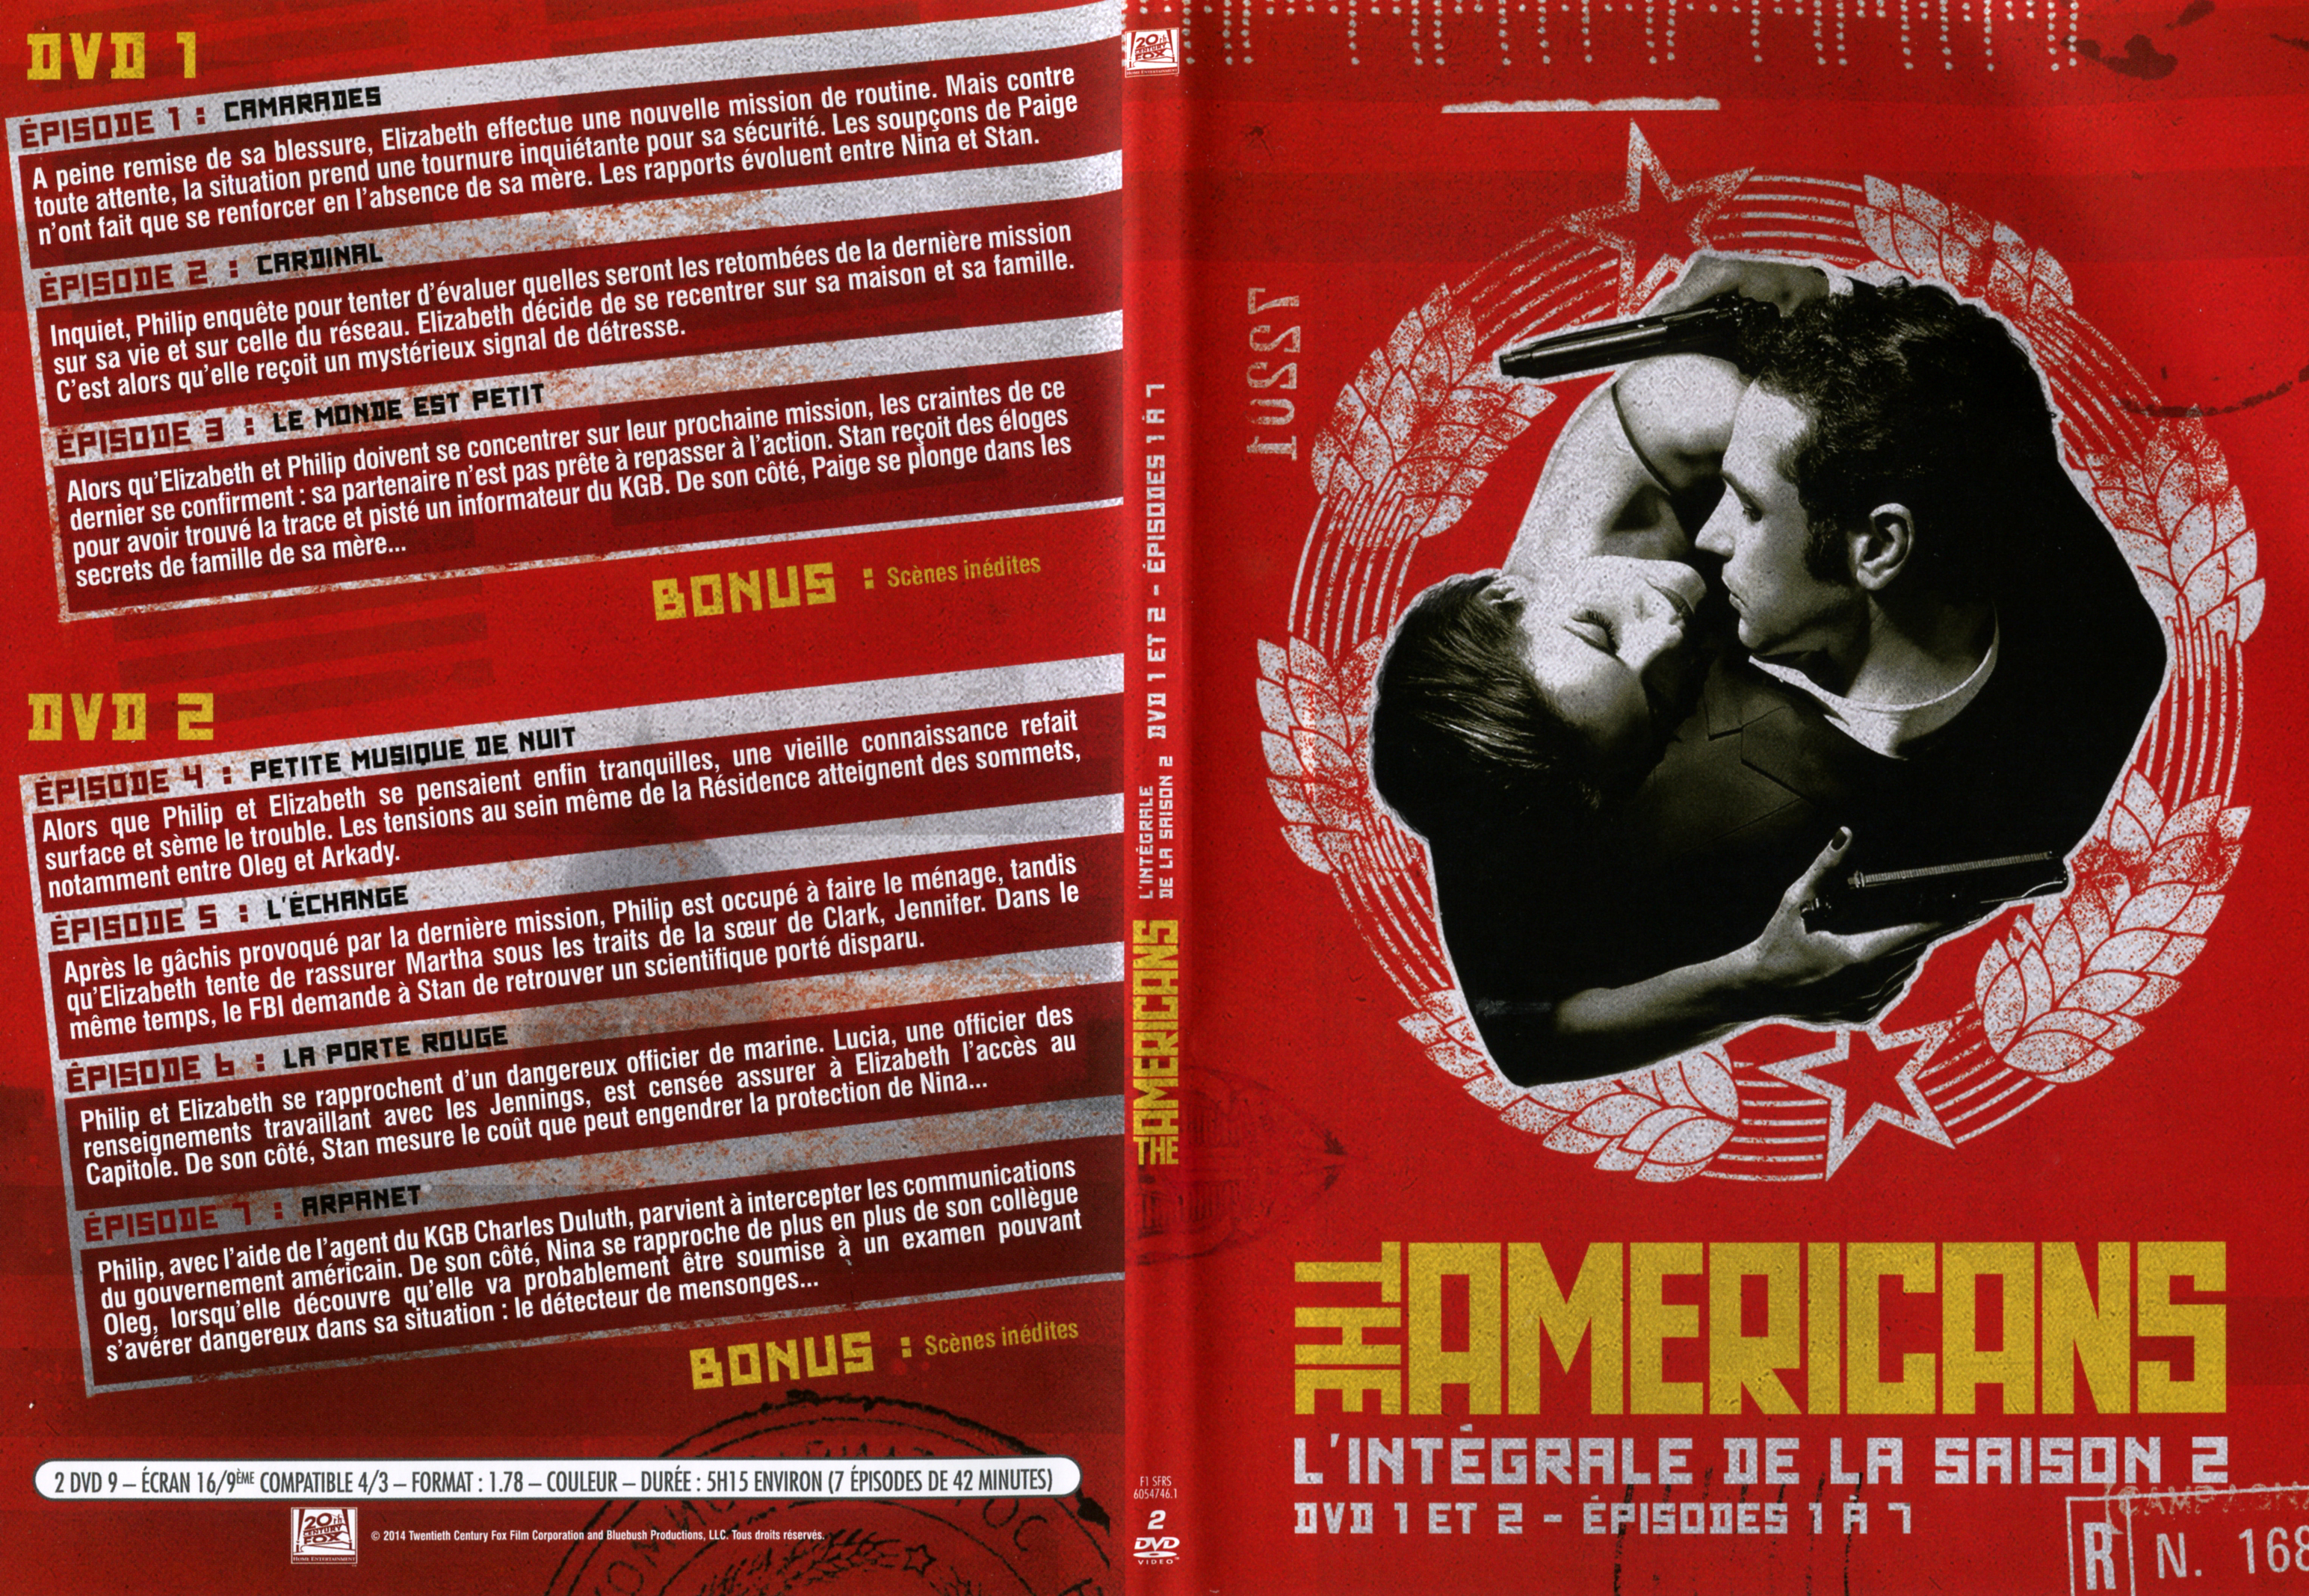 Jaquette DVD The americans Saison 2 DVD 1